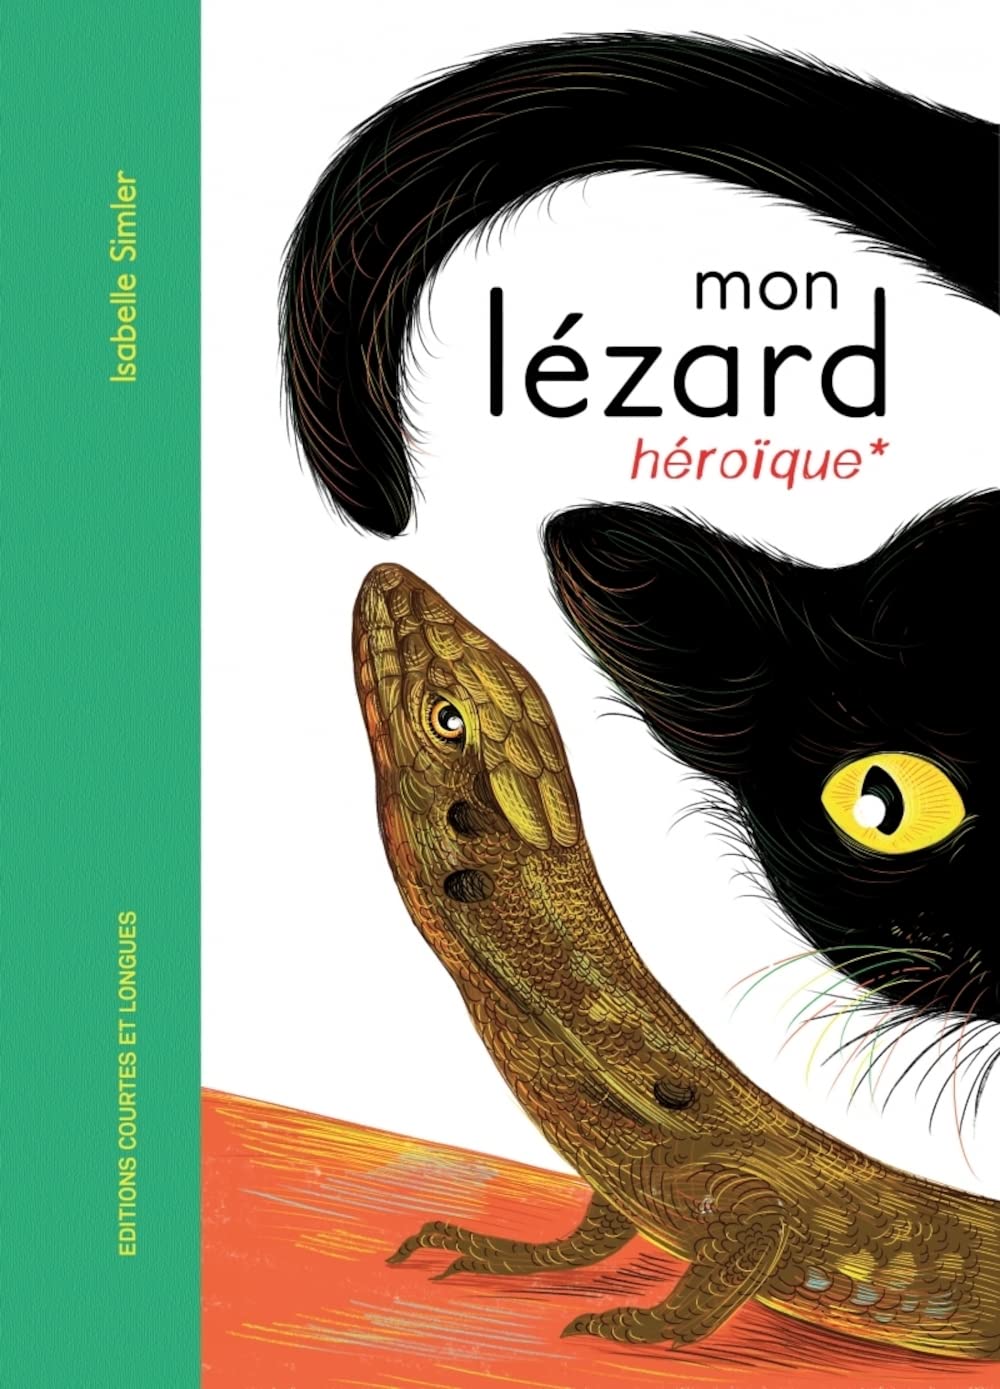 Mon Lezard heroique (Hardcover)